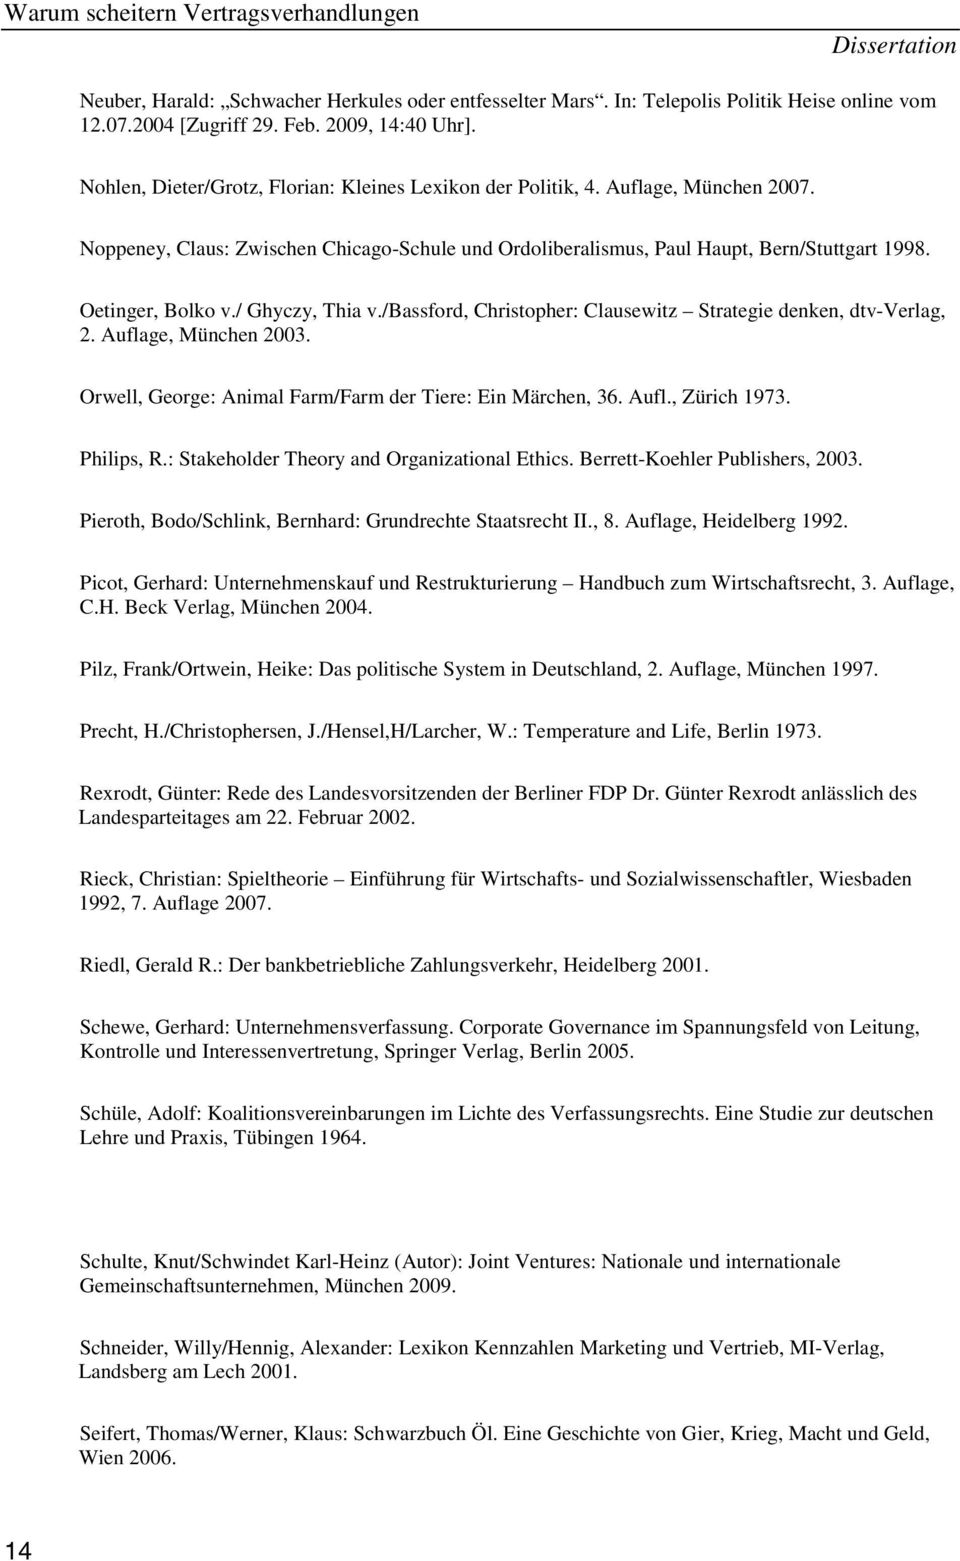 / Ghyczy, Thia v./bassford, Christopher: Clausewitz Strategie denken, dtv-verlag, 2. Auflage, München 2003. Orwell, George: Animal Farm/Farm der Tiere: Ein Märchen, 36. Aufl., Zürich 1973. Philips, R.